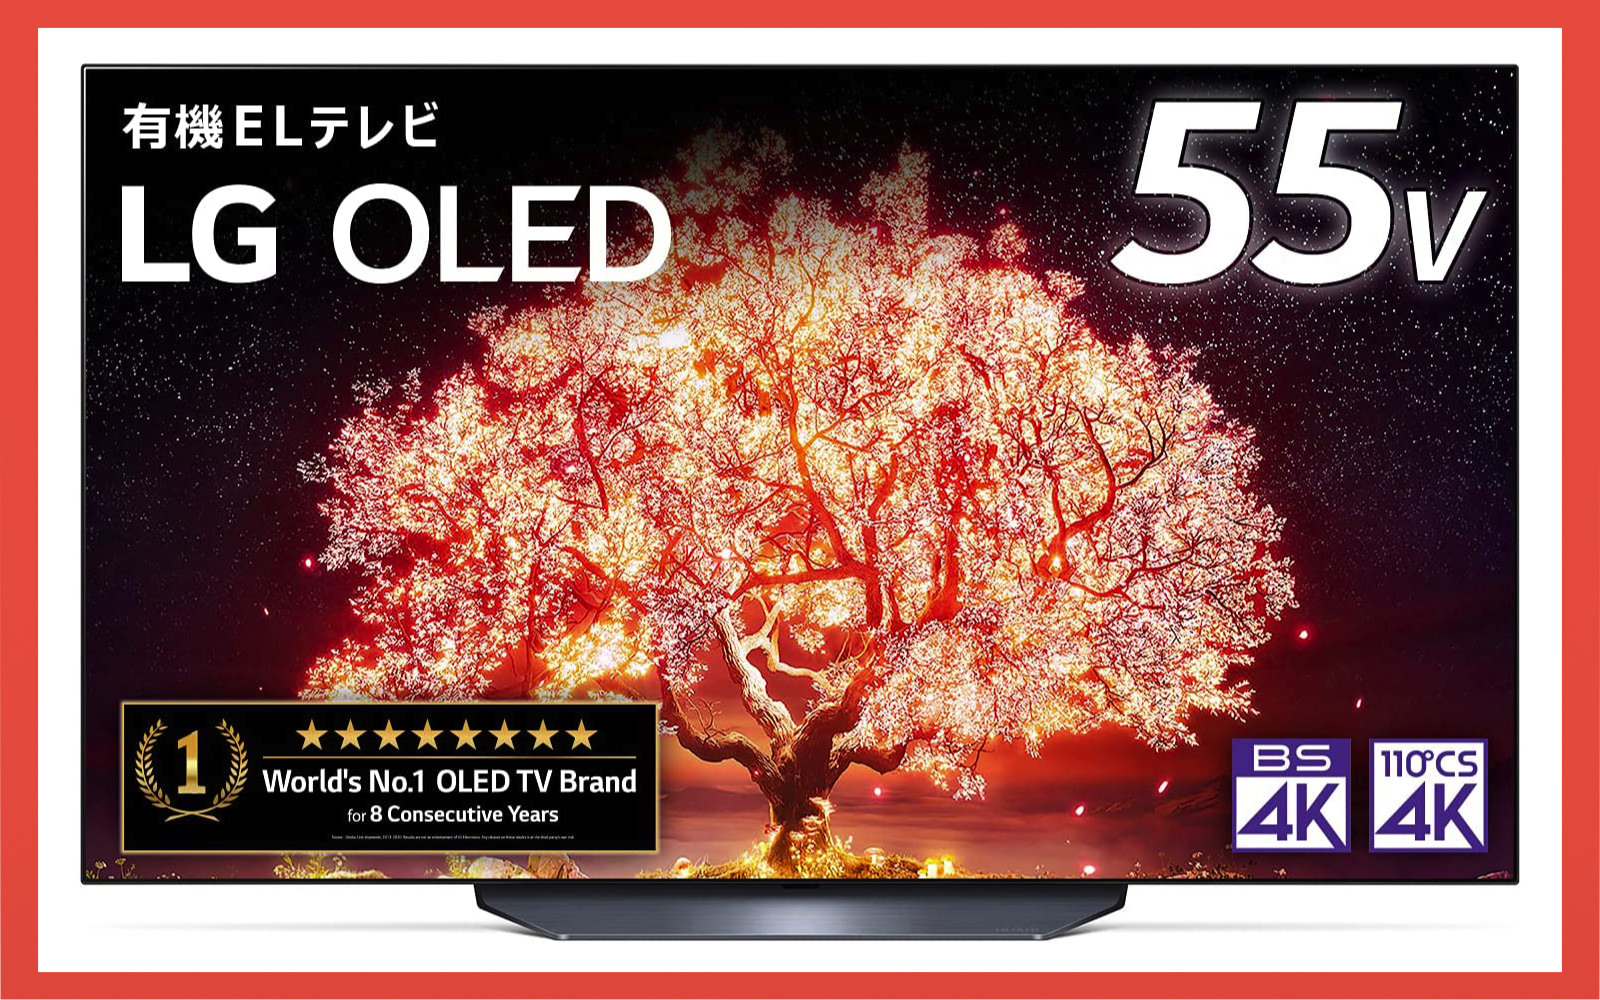 LG OLED 55V tv sale amazon2022